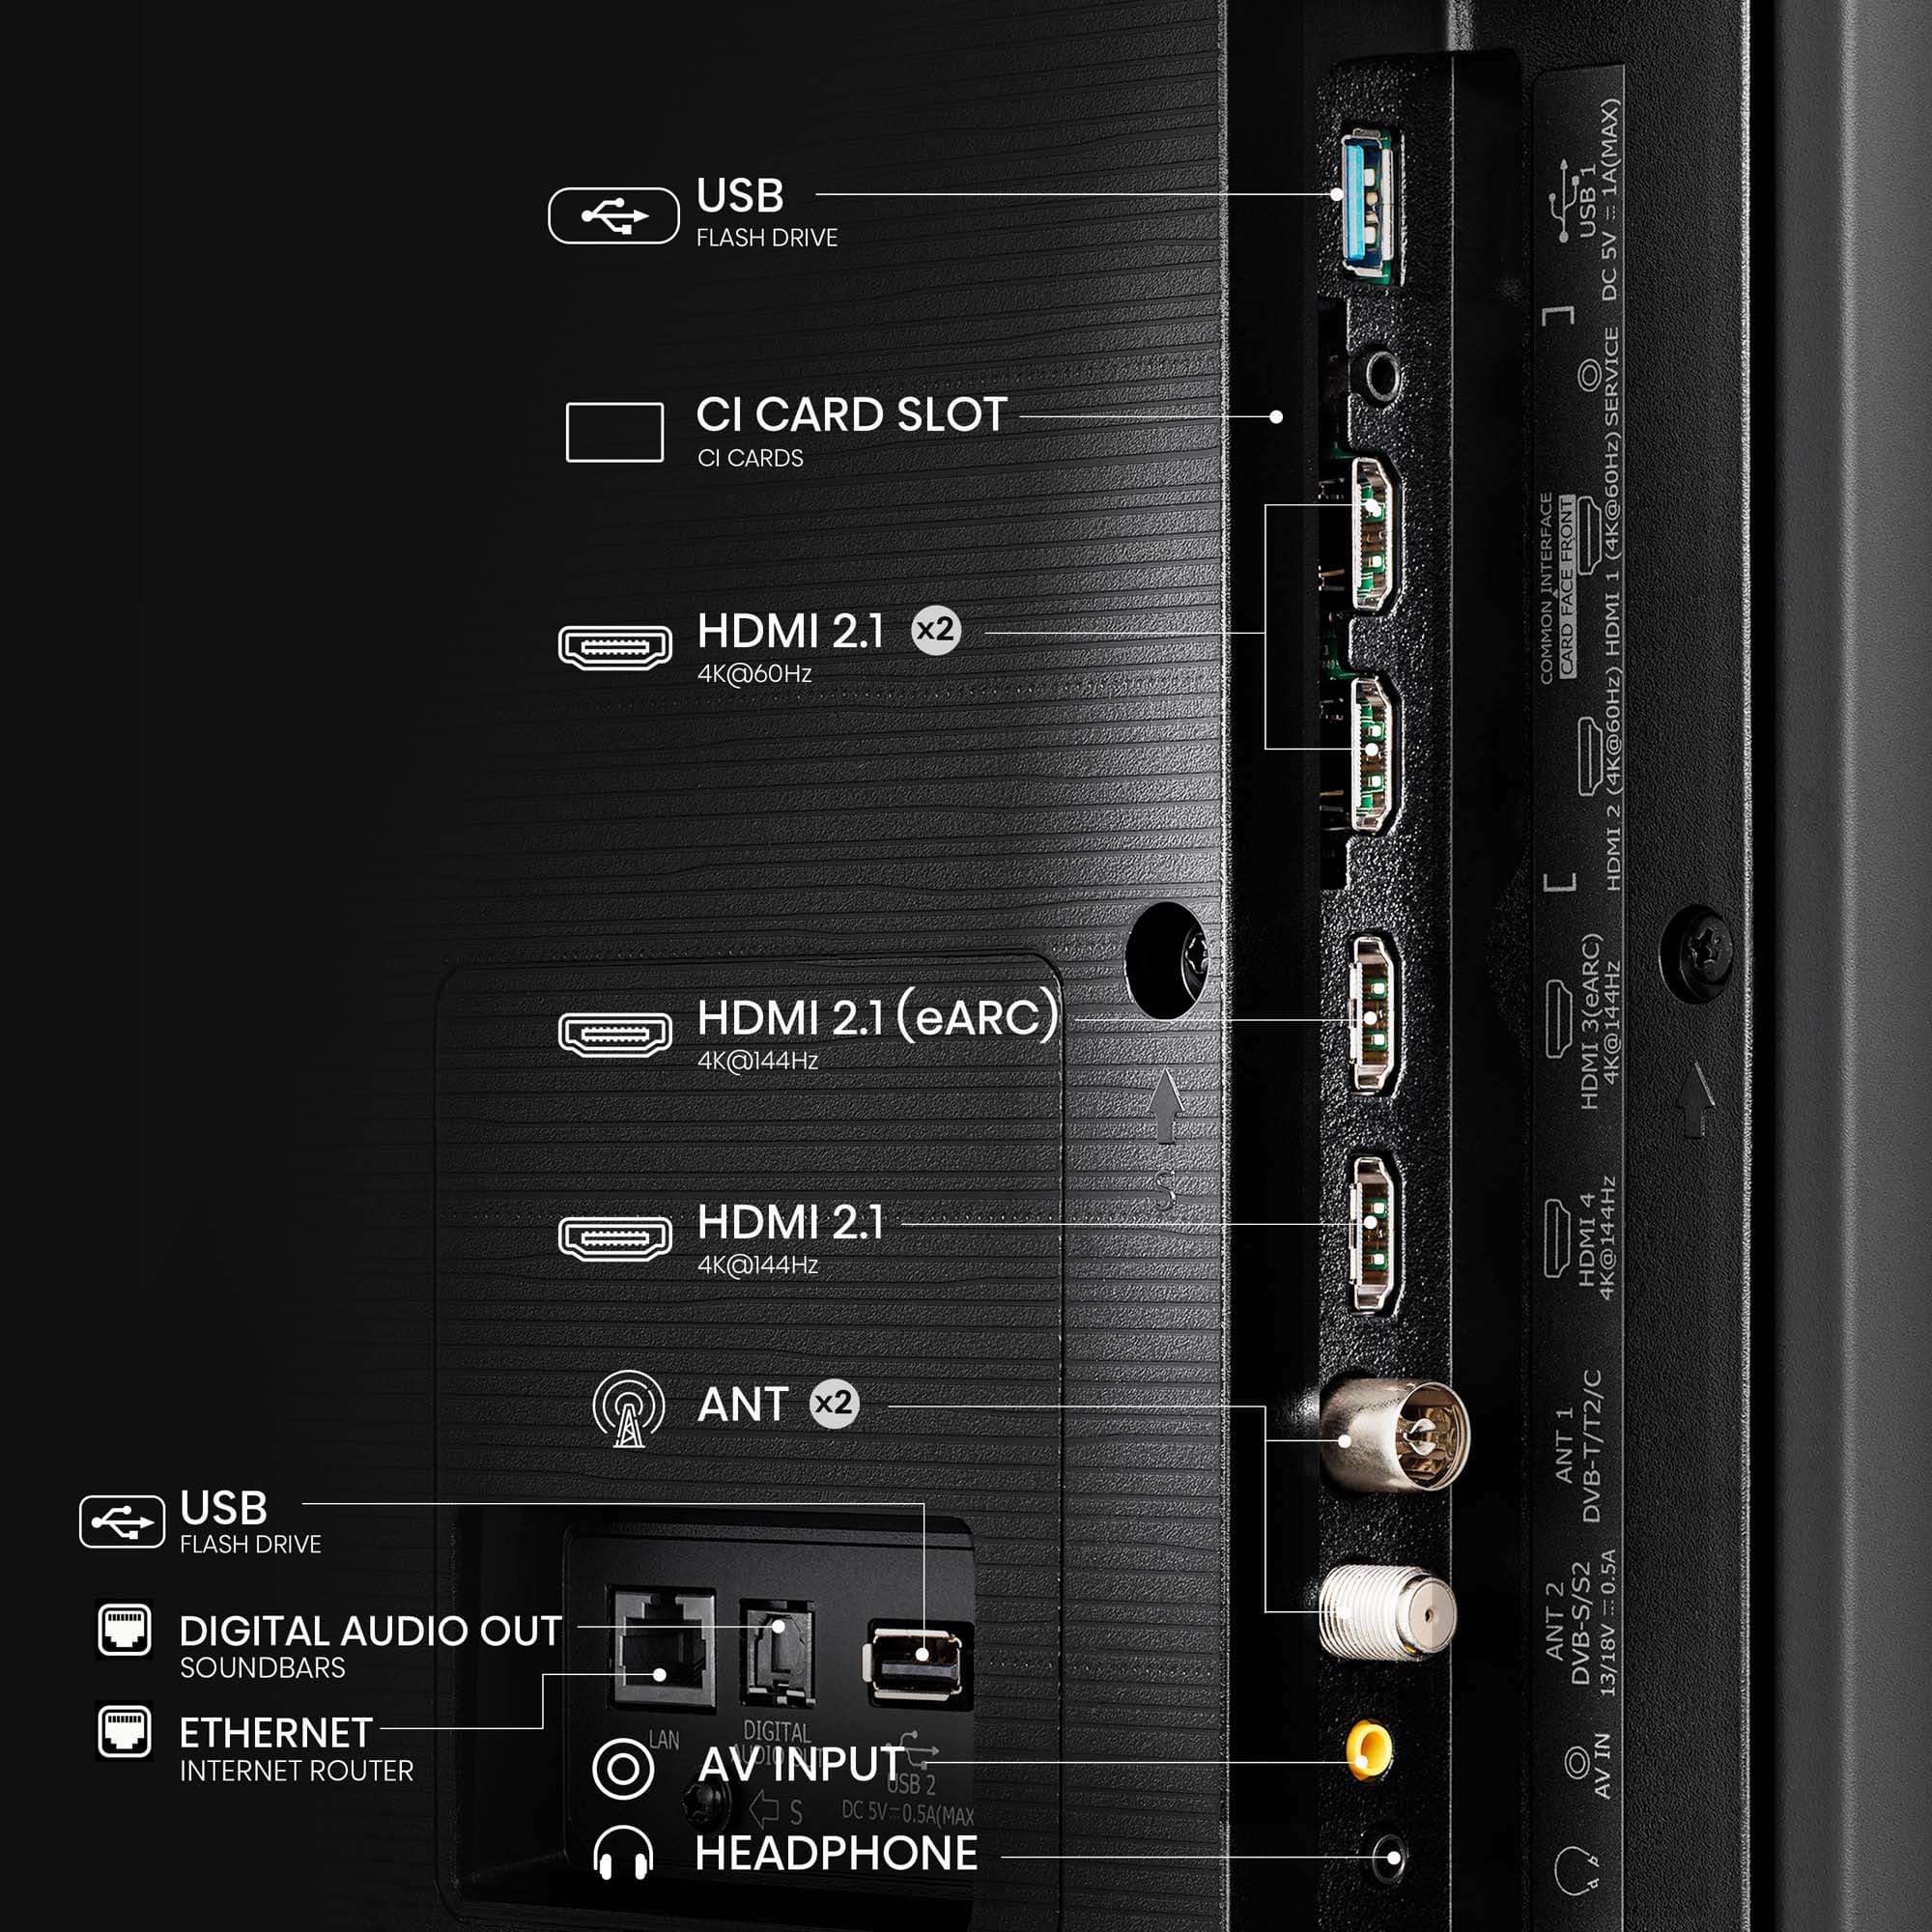 Hisense - QLED 100E7NQ Pro, Gaming TV